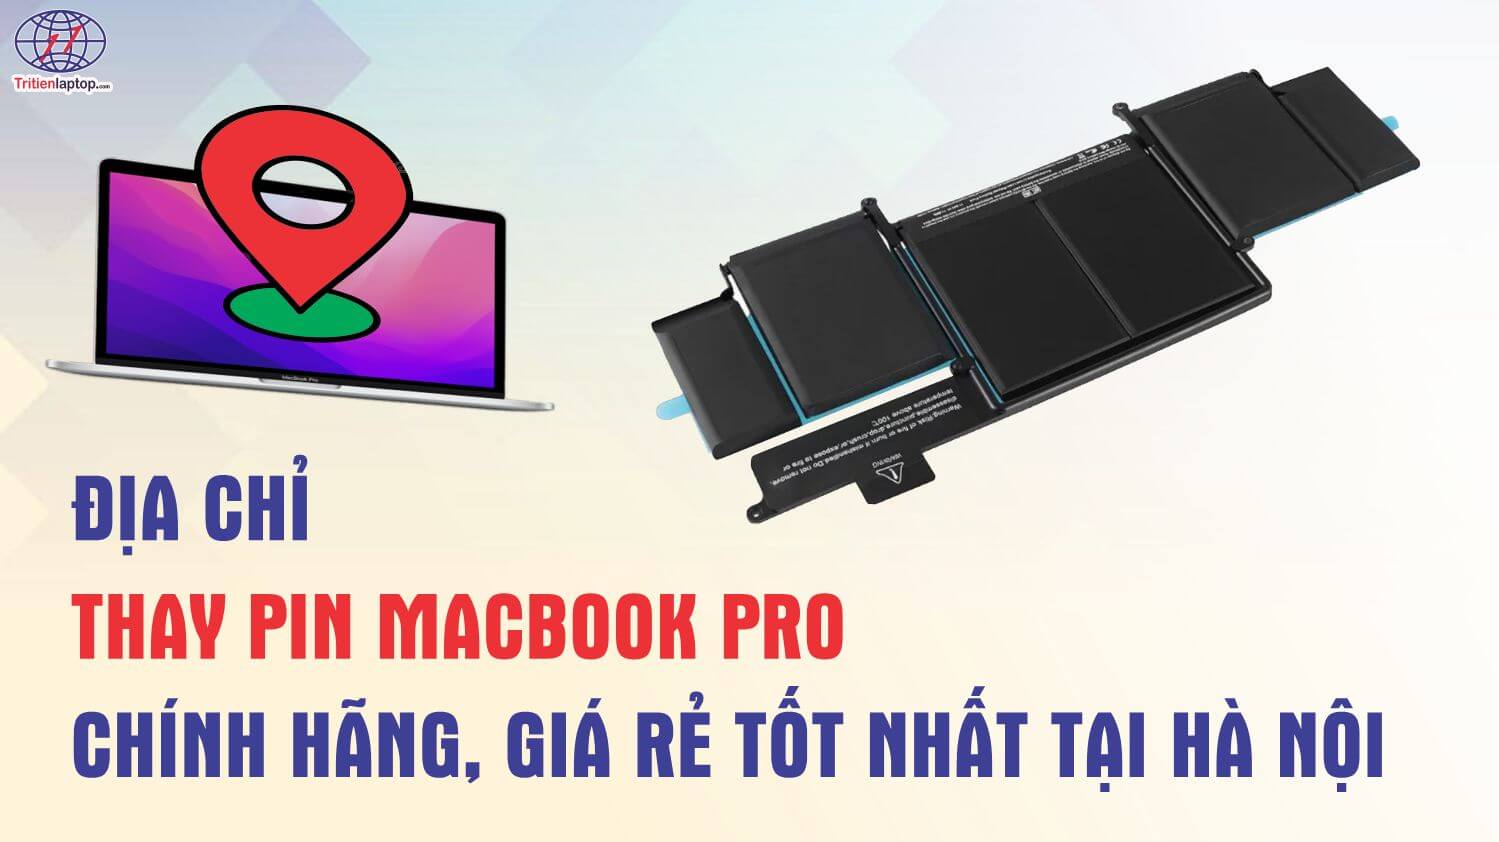 Mua pin MacBook Pro chính hãng, giá rẻ tốt nhất ở đâu?